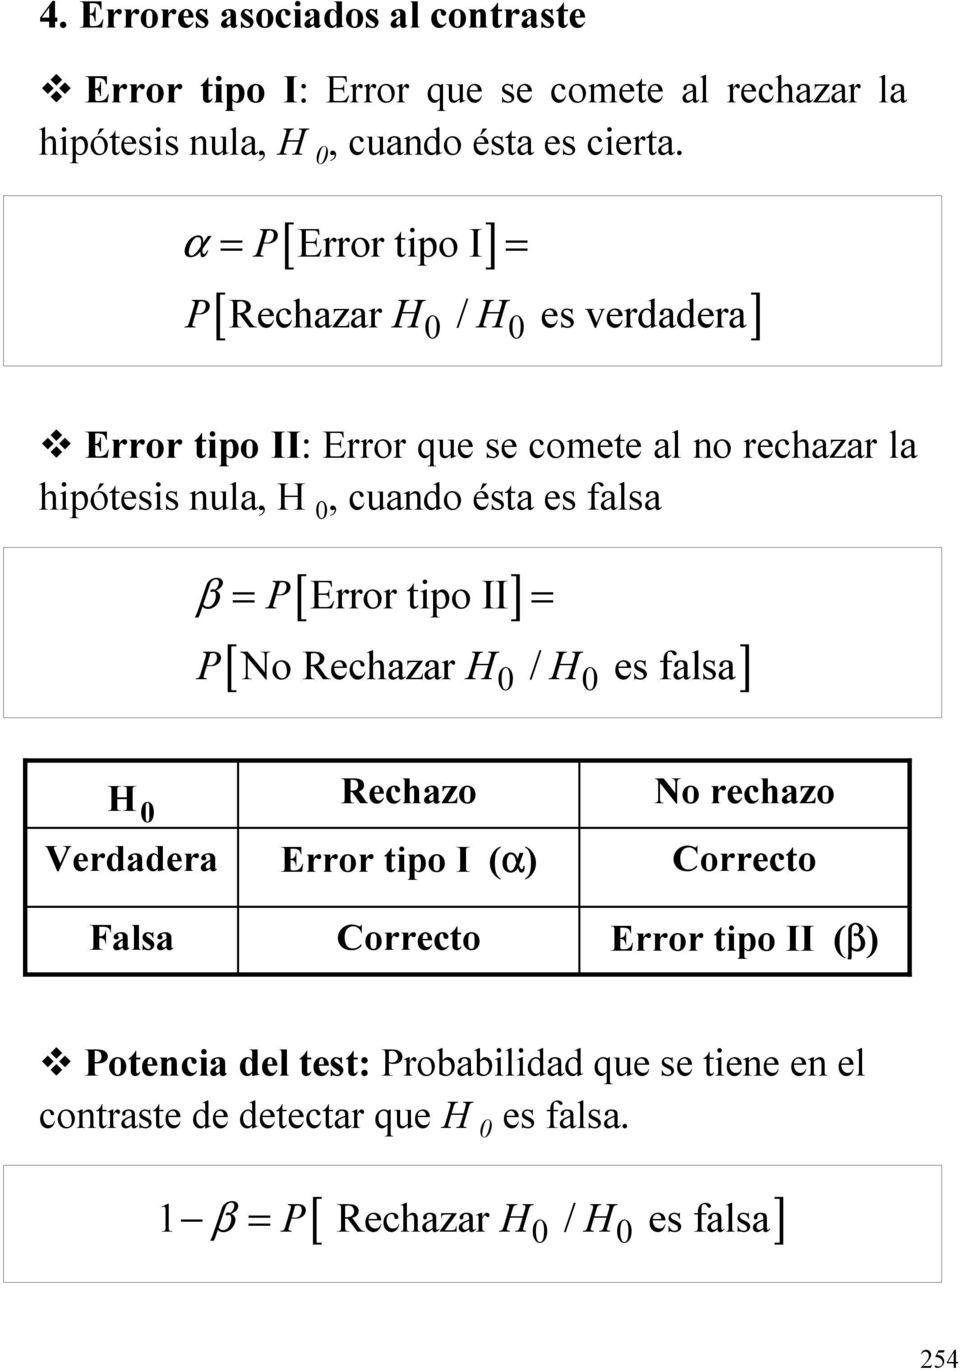 Error tipo II: Error que se comete al o rechazar la hipótesis ula,, cuado ésta es falsa P[ Error tipo II ] [ No Rechazar / es